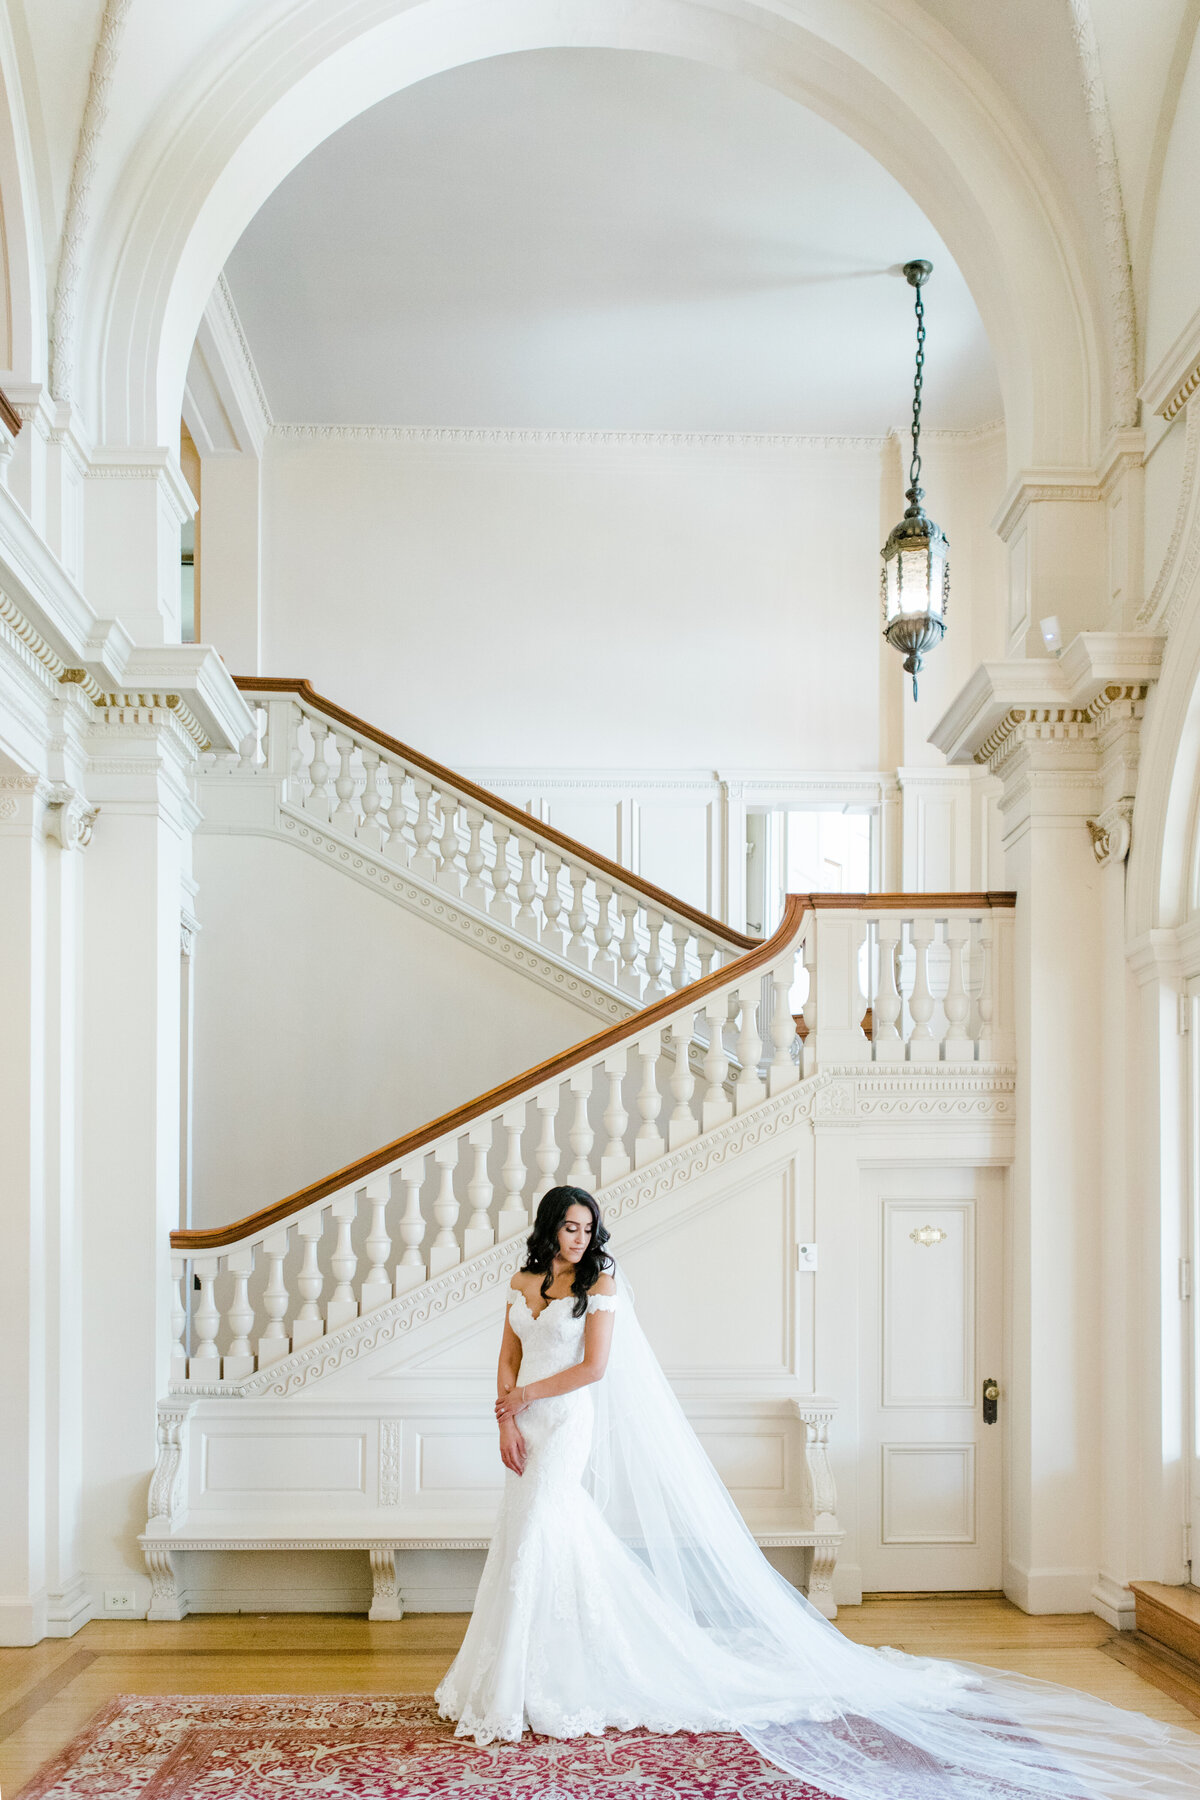 Mariya_Brad_Cairnwood_Estate_Abington_Arts_Center_Wedding_Washington_DC_VA_MD_Wedding_Photographer_AngelikaJohnsPhotography-1812